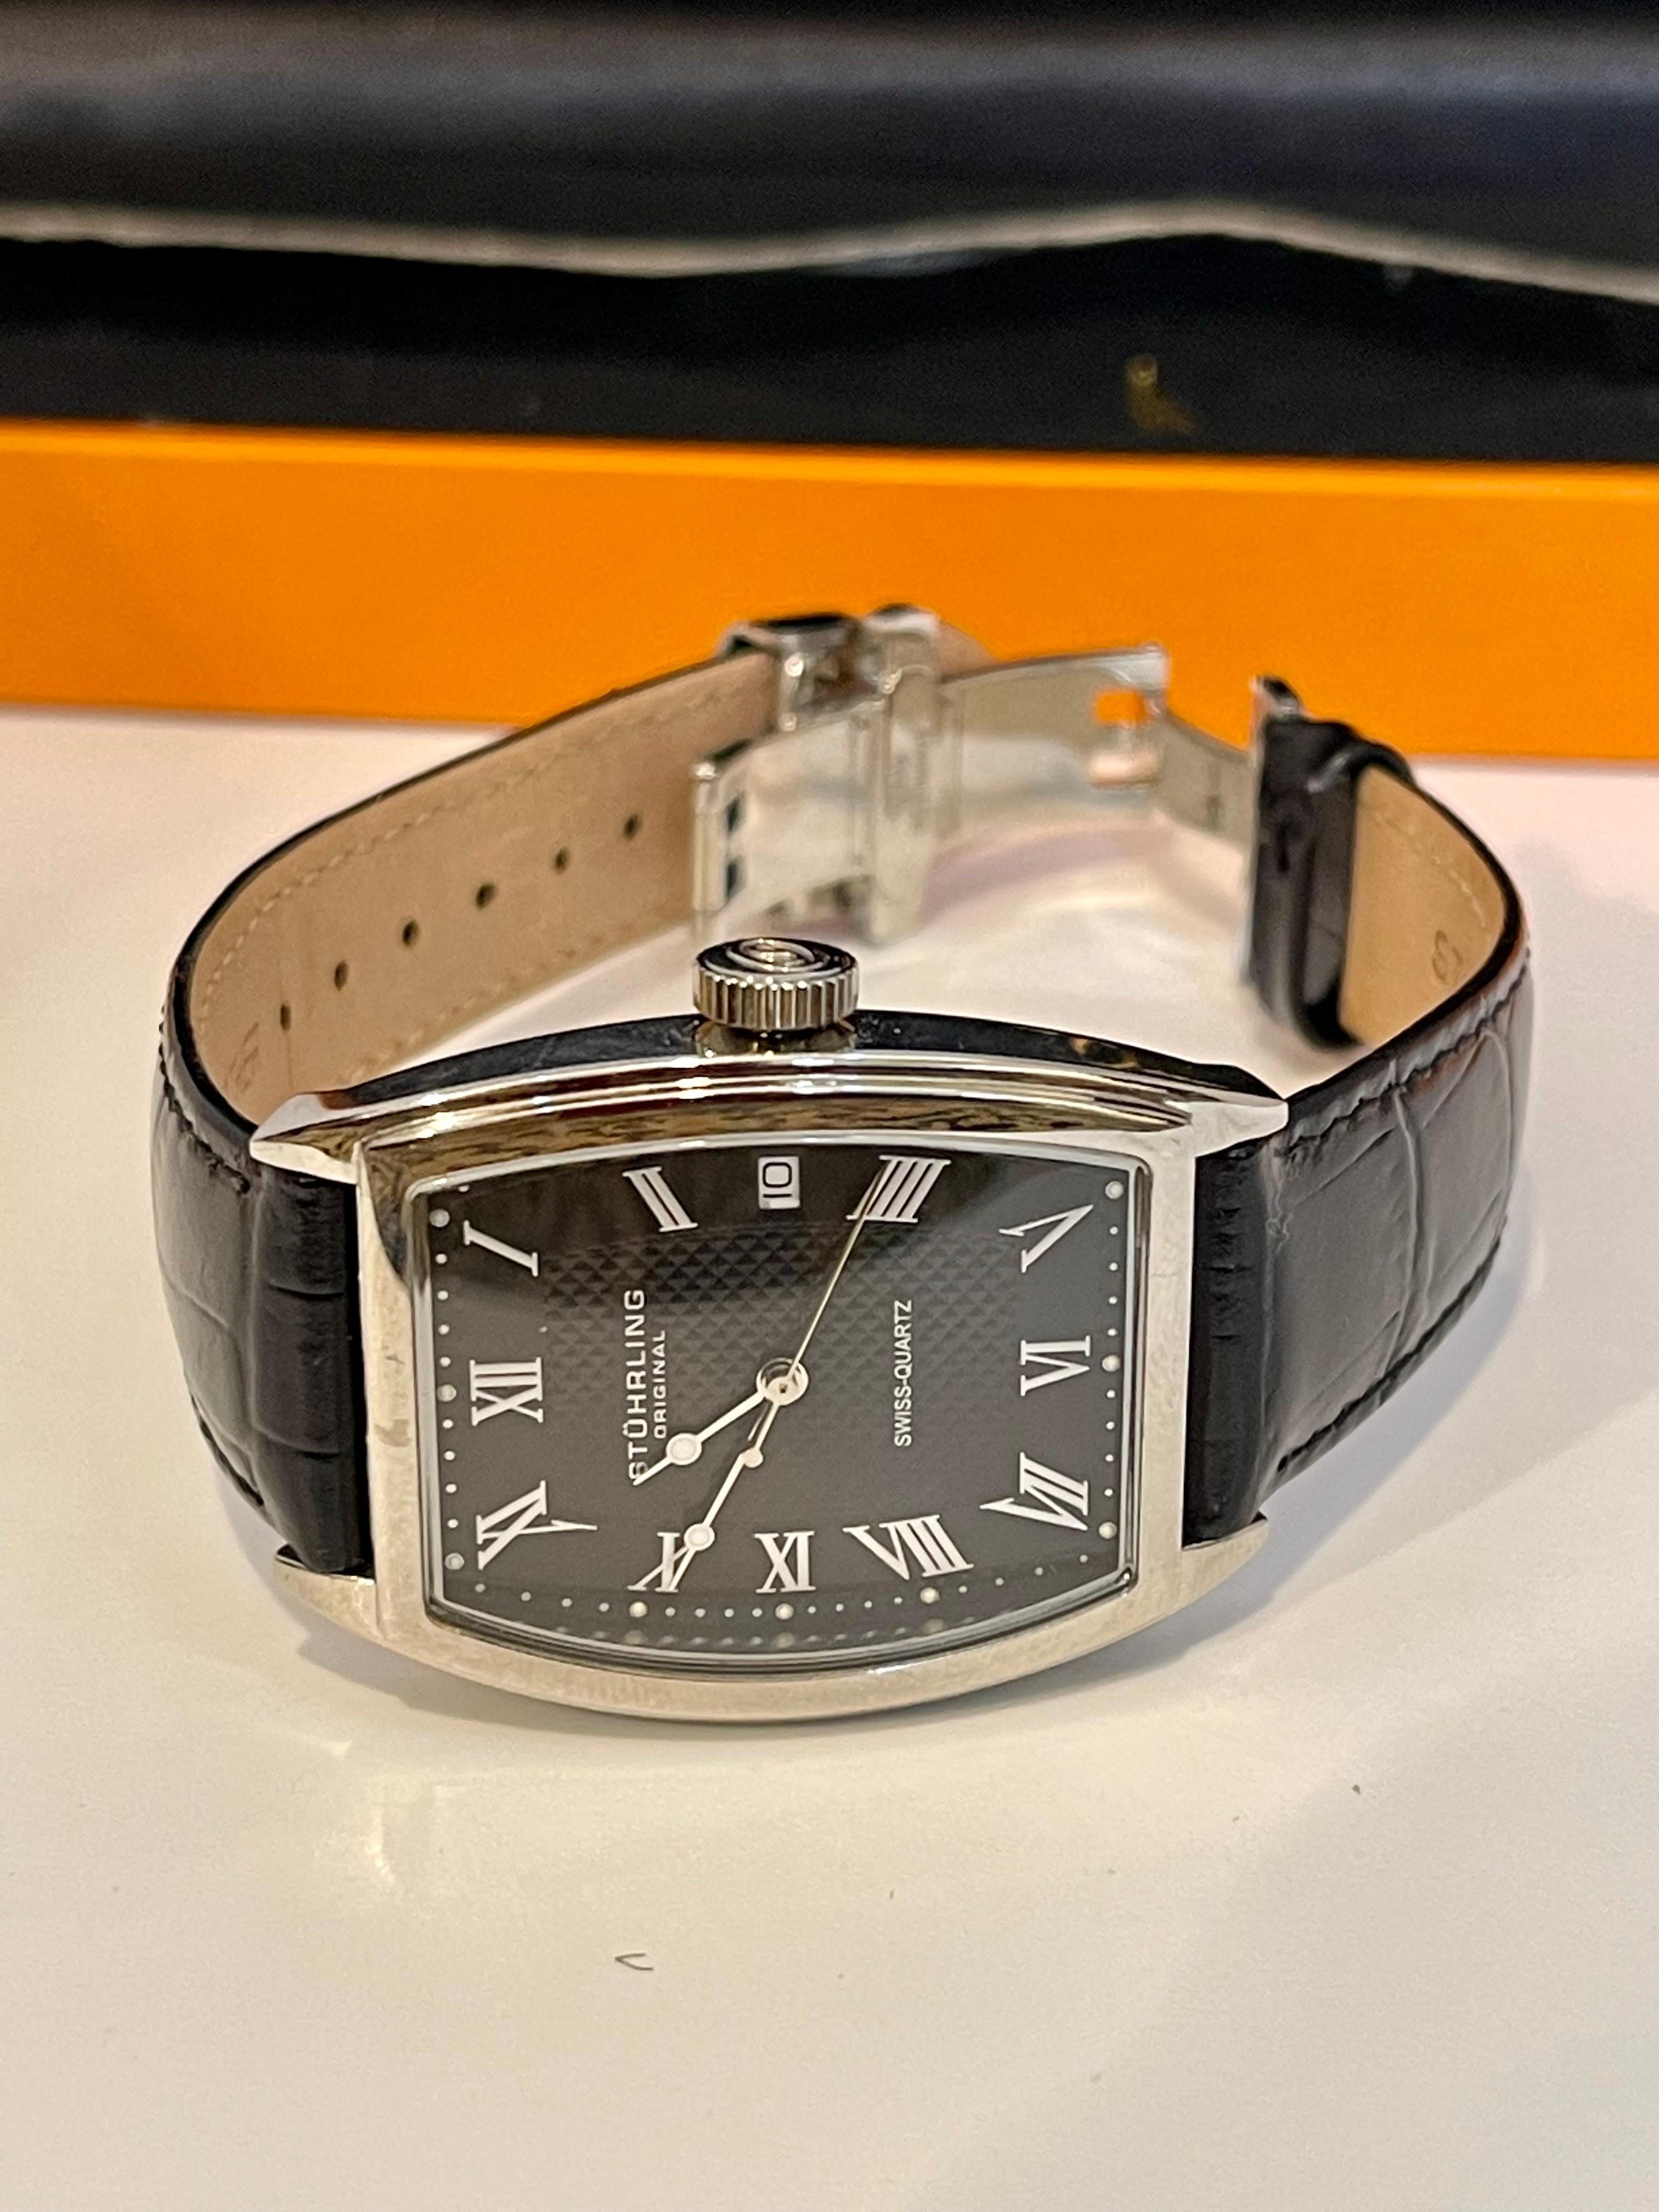 La montre est neuve dans son emballage d'origine. 
La longueur totale de la montre avec la ceinture en cuir est de 9 pouces.
Département :	Hommes	                                                                                                       